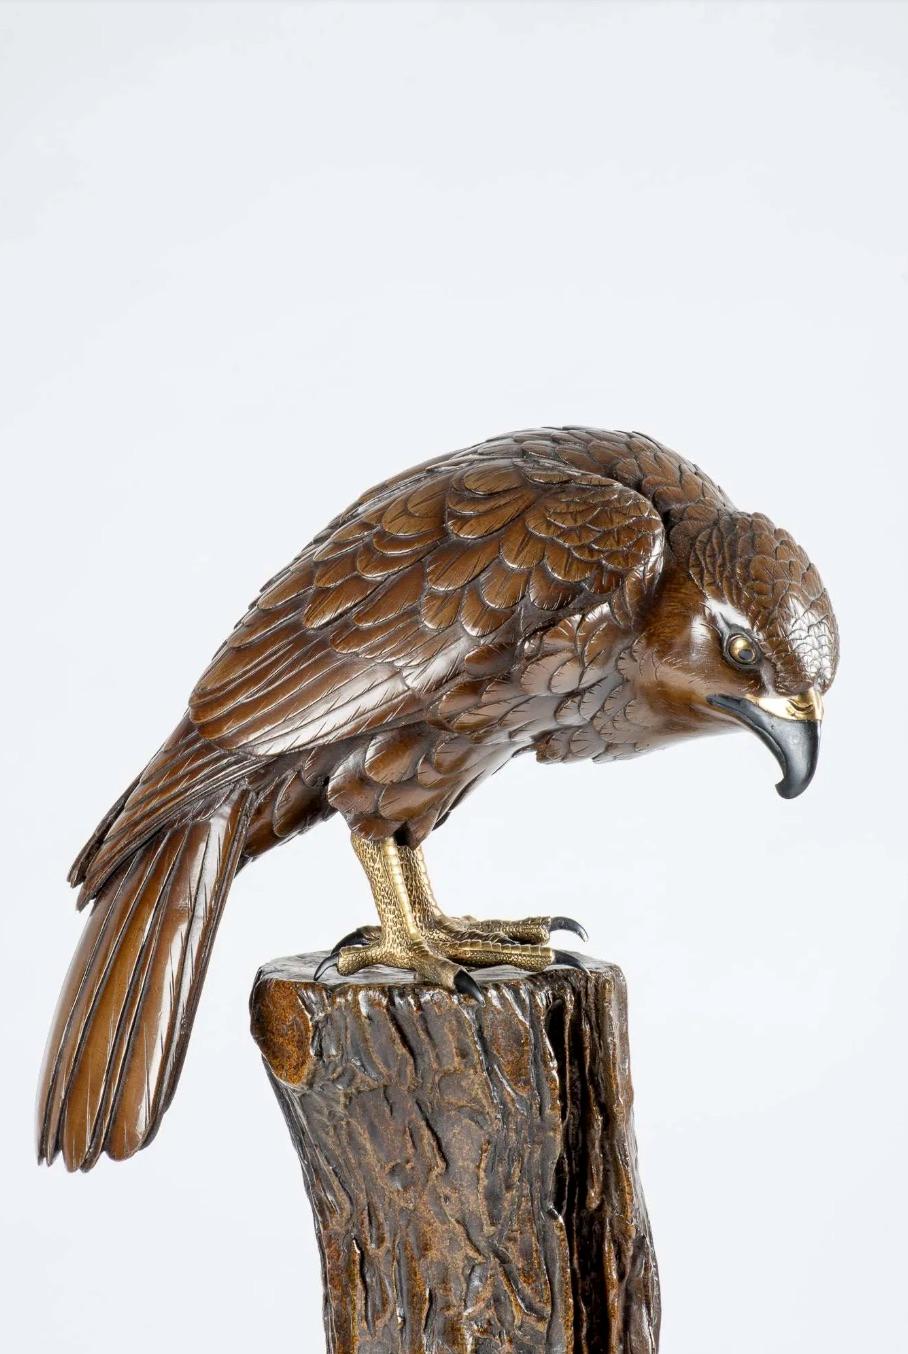 Eine japanische Bronzeskulptur, die einen sitzenden Falken in heller Patina mit polychromen Augen, Schnabel und Beinen in Schwarz im Kontrast zu reinem Gold darstellt.

Die Skulptur zeigt den Falken in einem Moment ruhiger Gelassenheit, in dem er